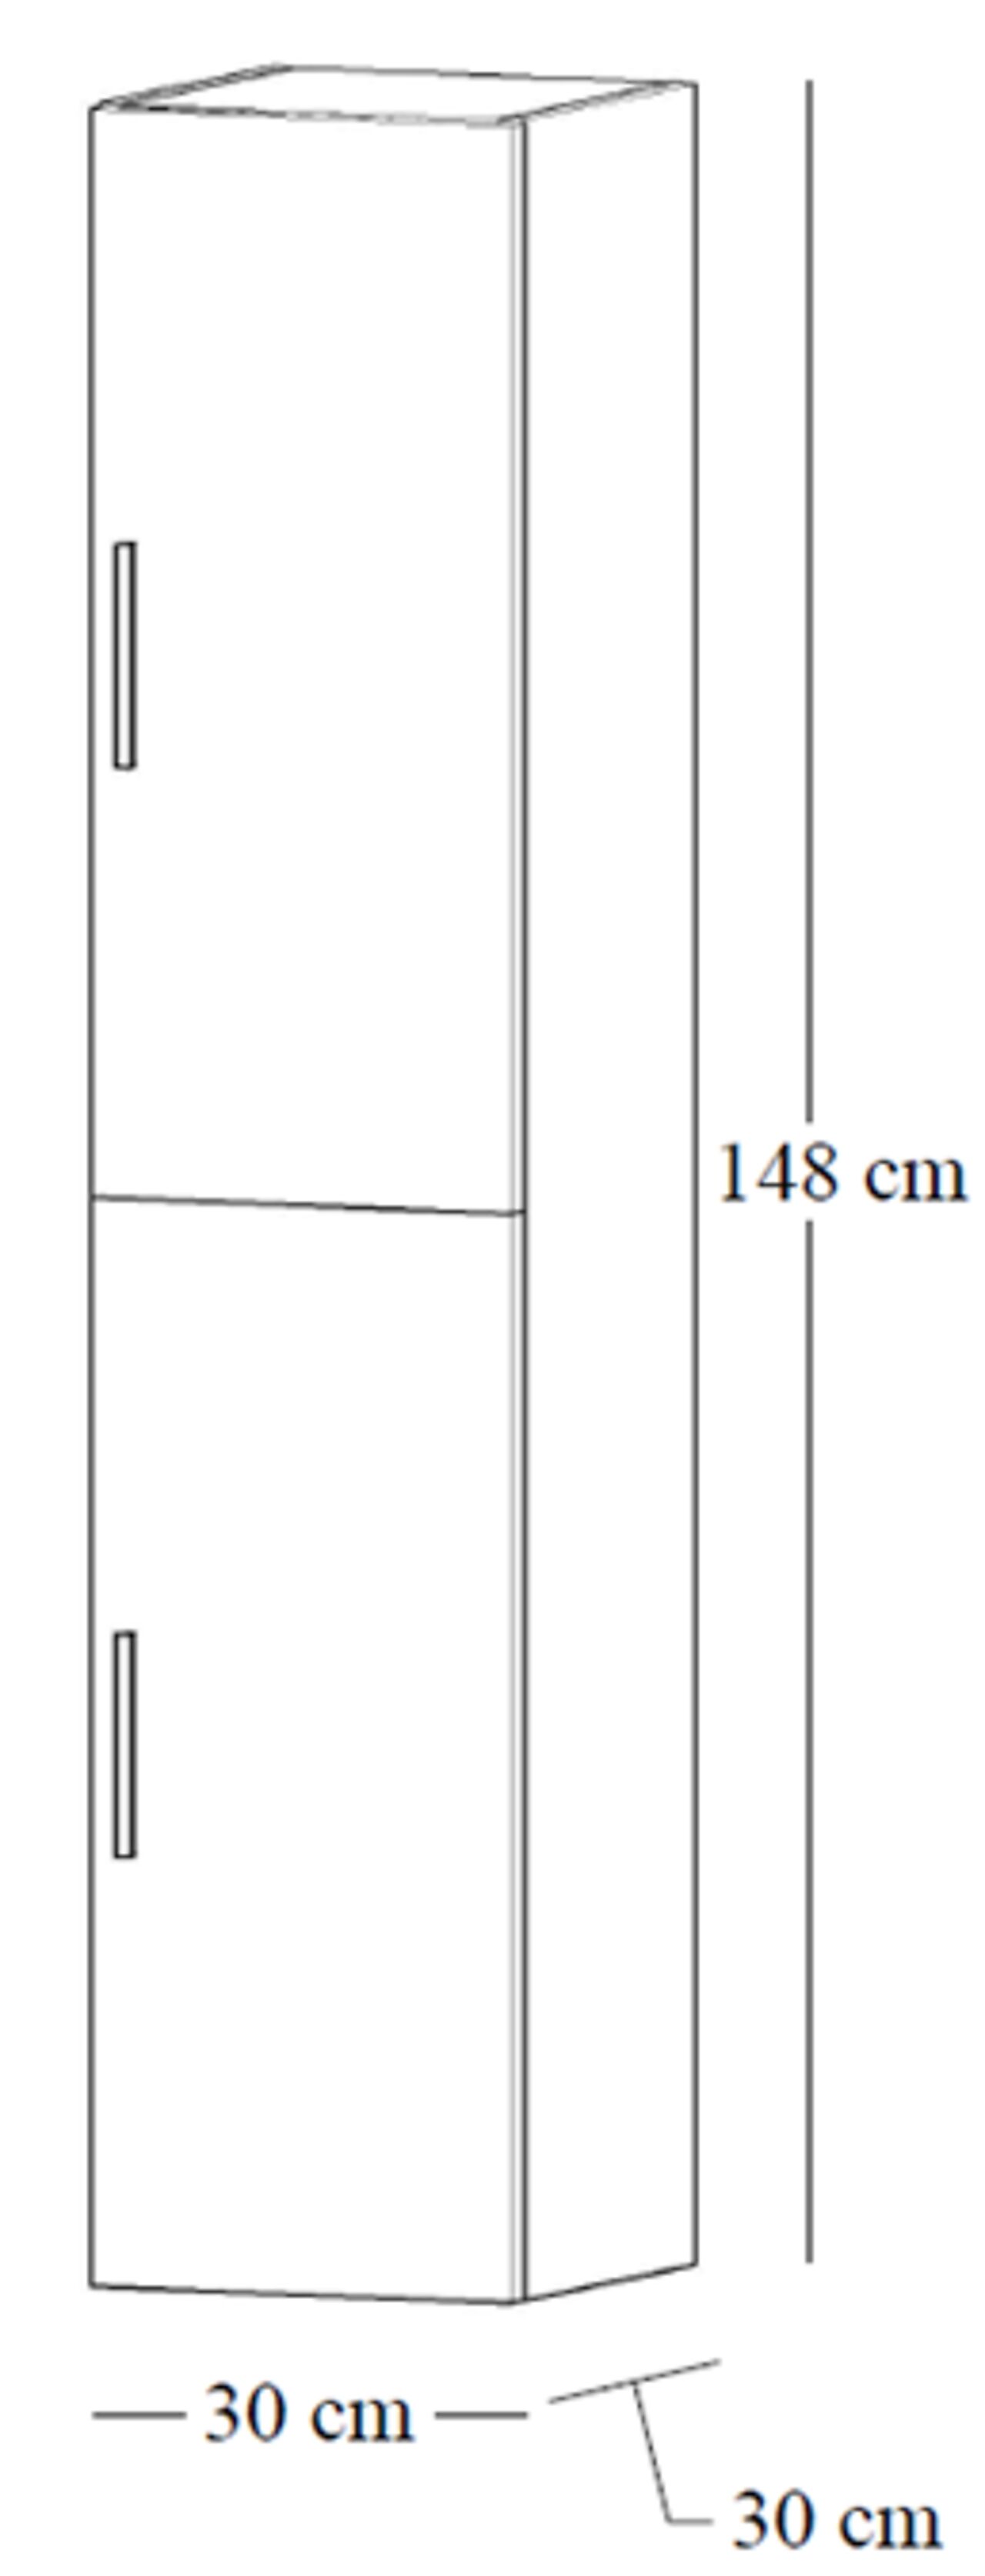 Alterna Alterna Malin 30 cm høyskap med 2 skapdører eik 1